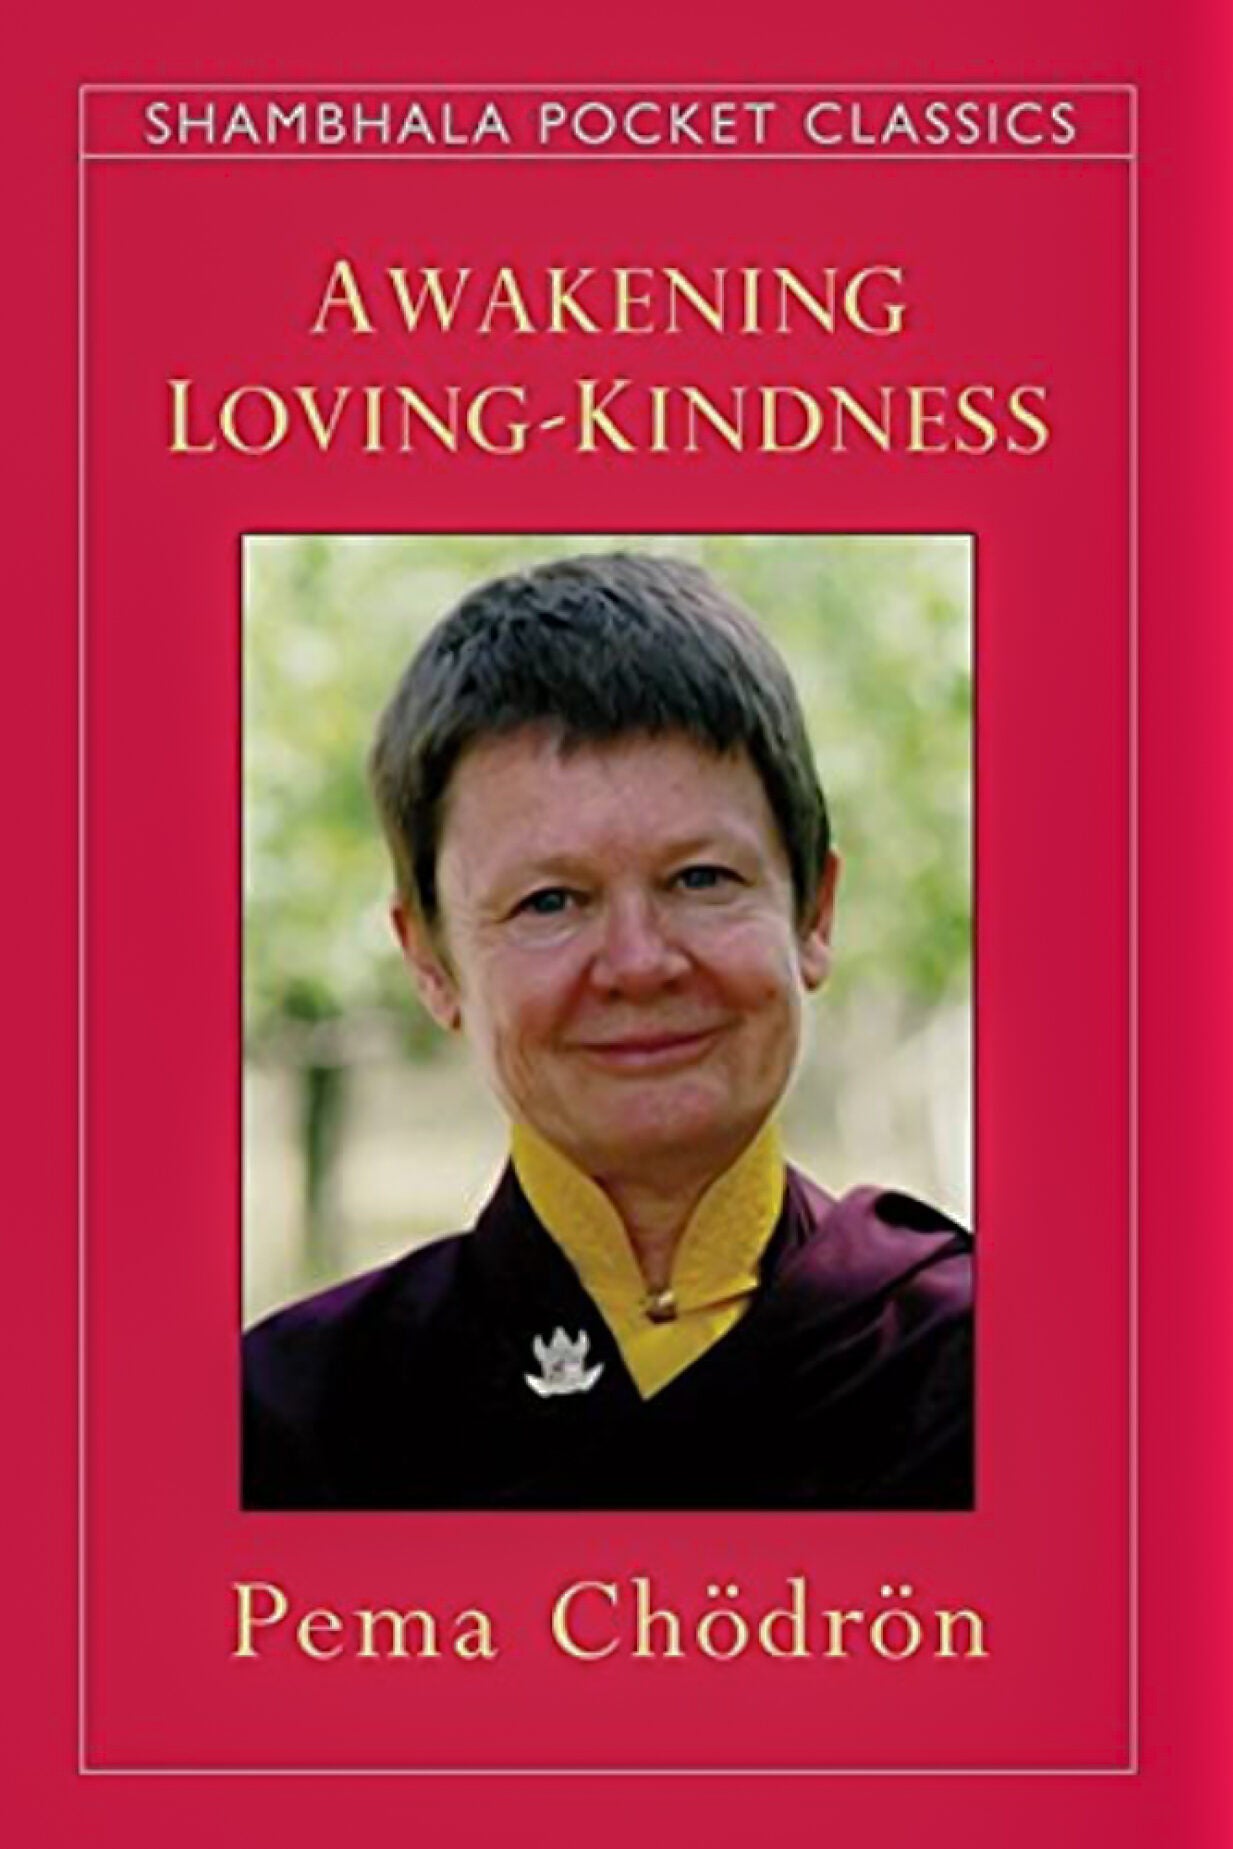 Book cover: "Awakening Loving-Kindness."